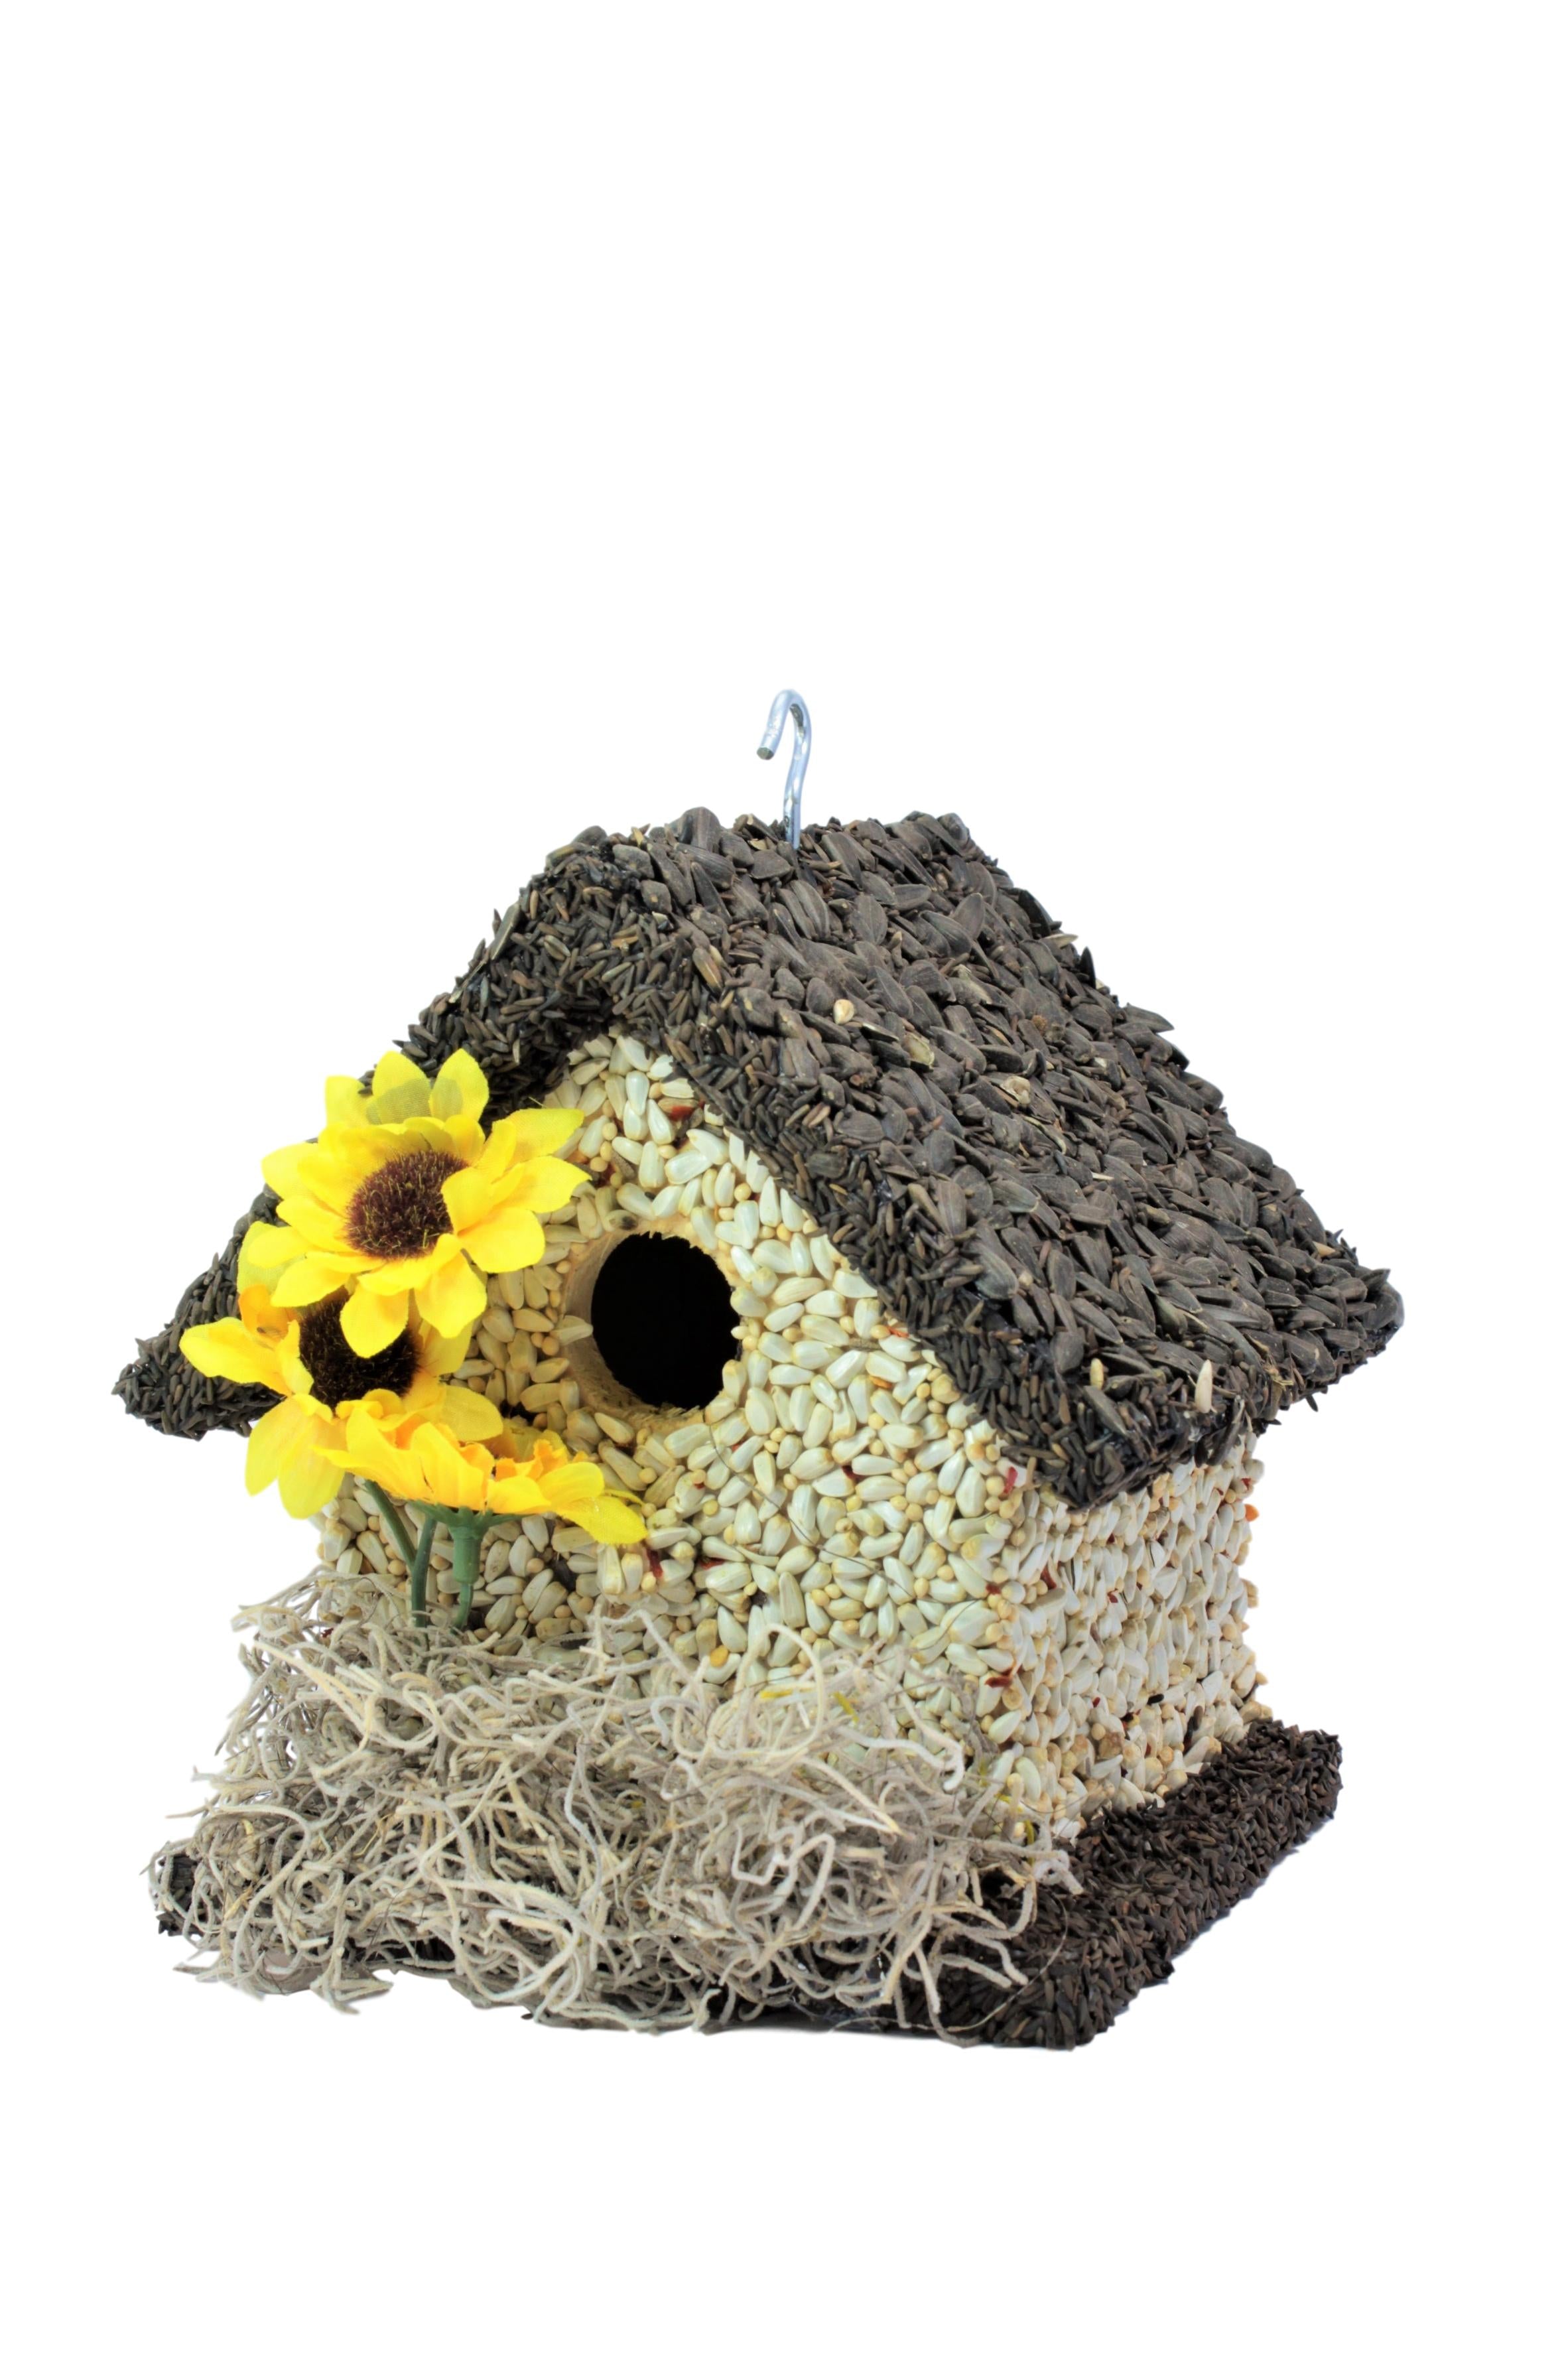 Edible Bird Feeder - Dark Roof Short Birdhouse